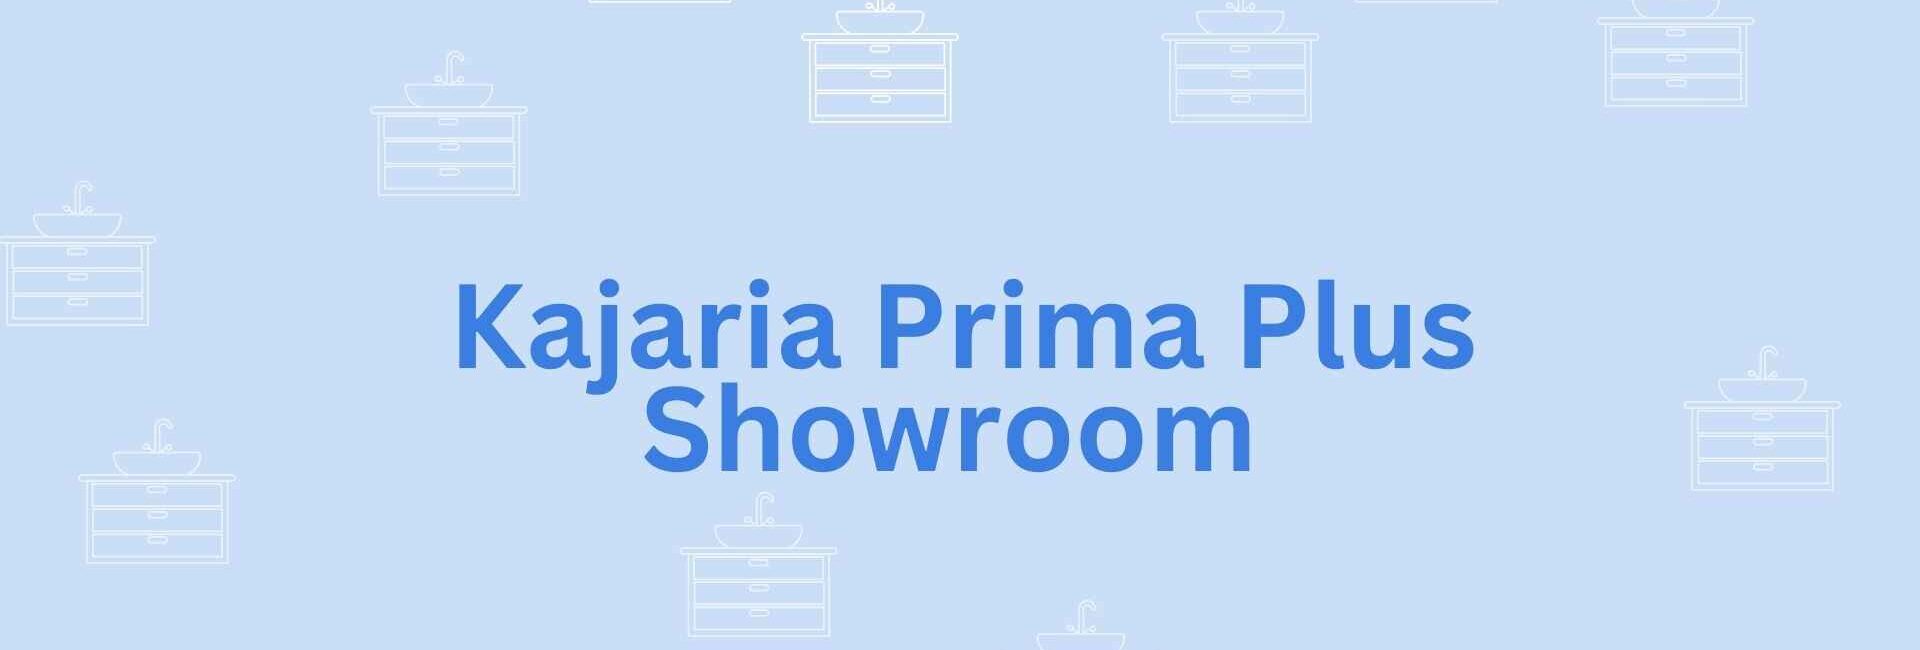 Kajaria Prima Plus Showroom - Sanitary bin Dealer in Noida